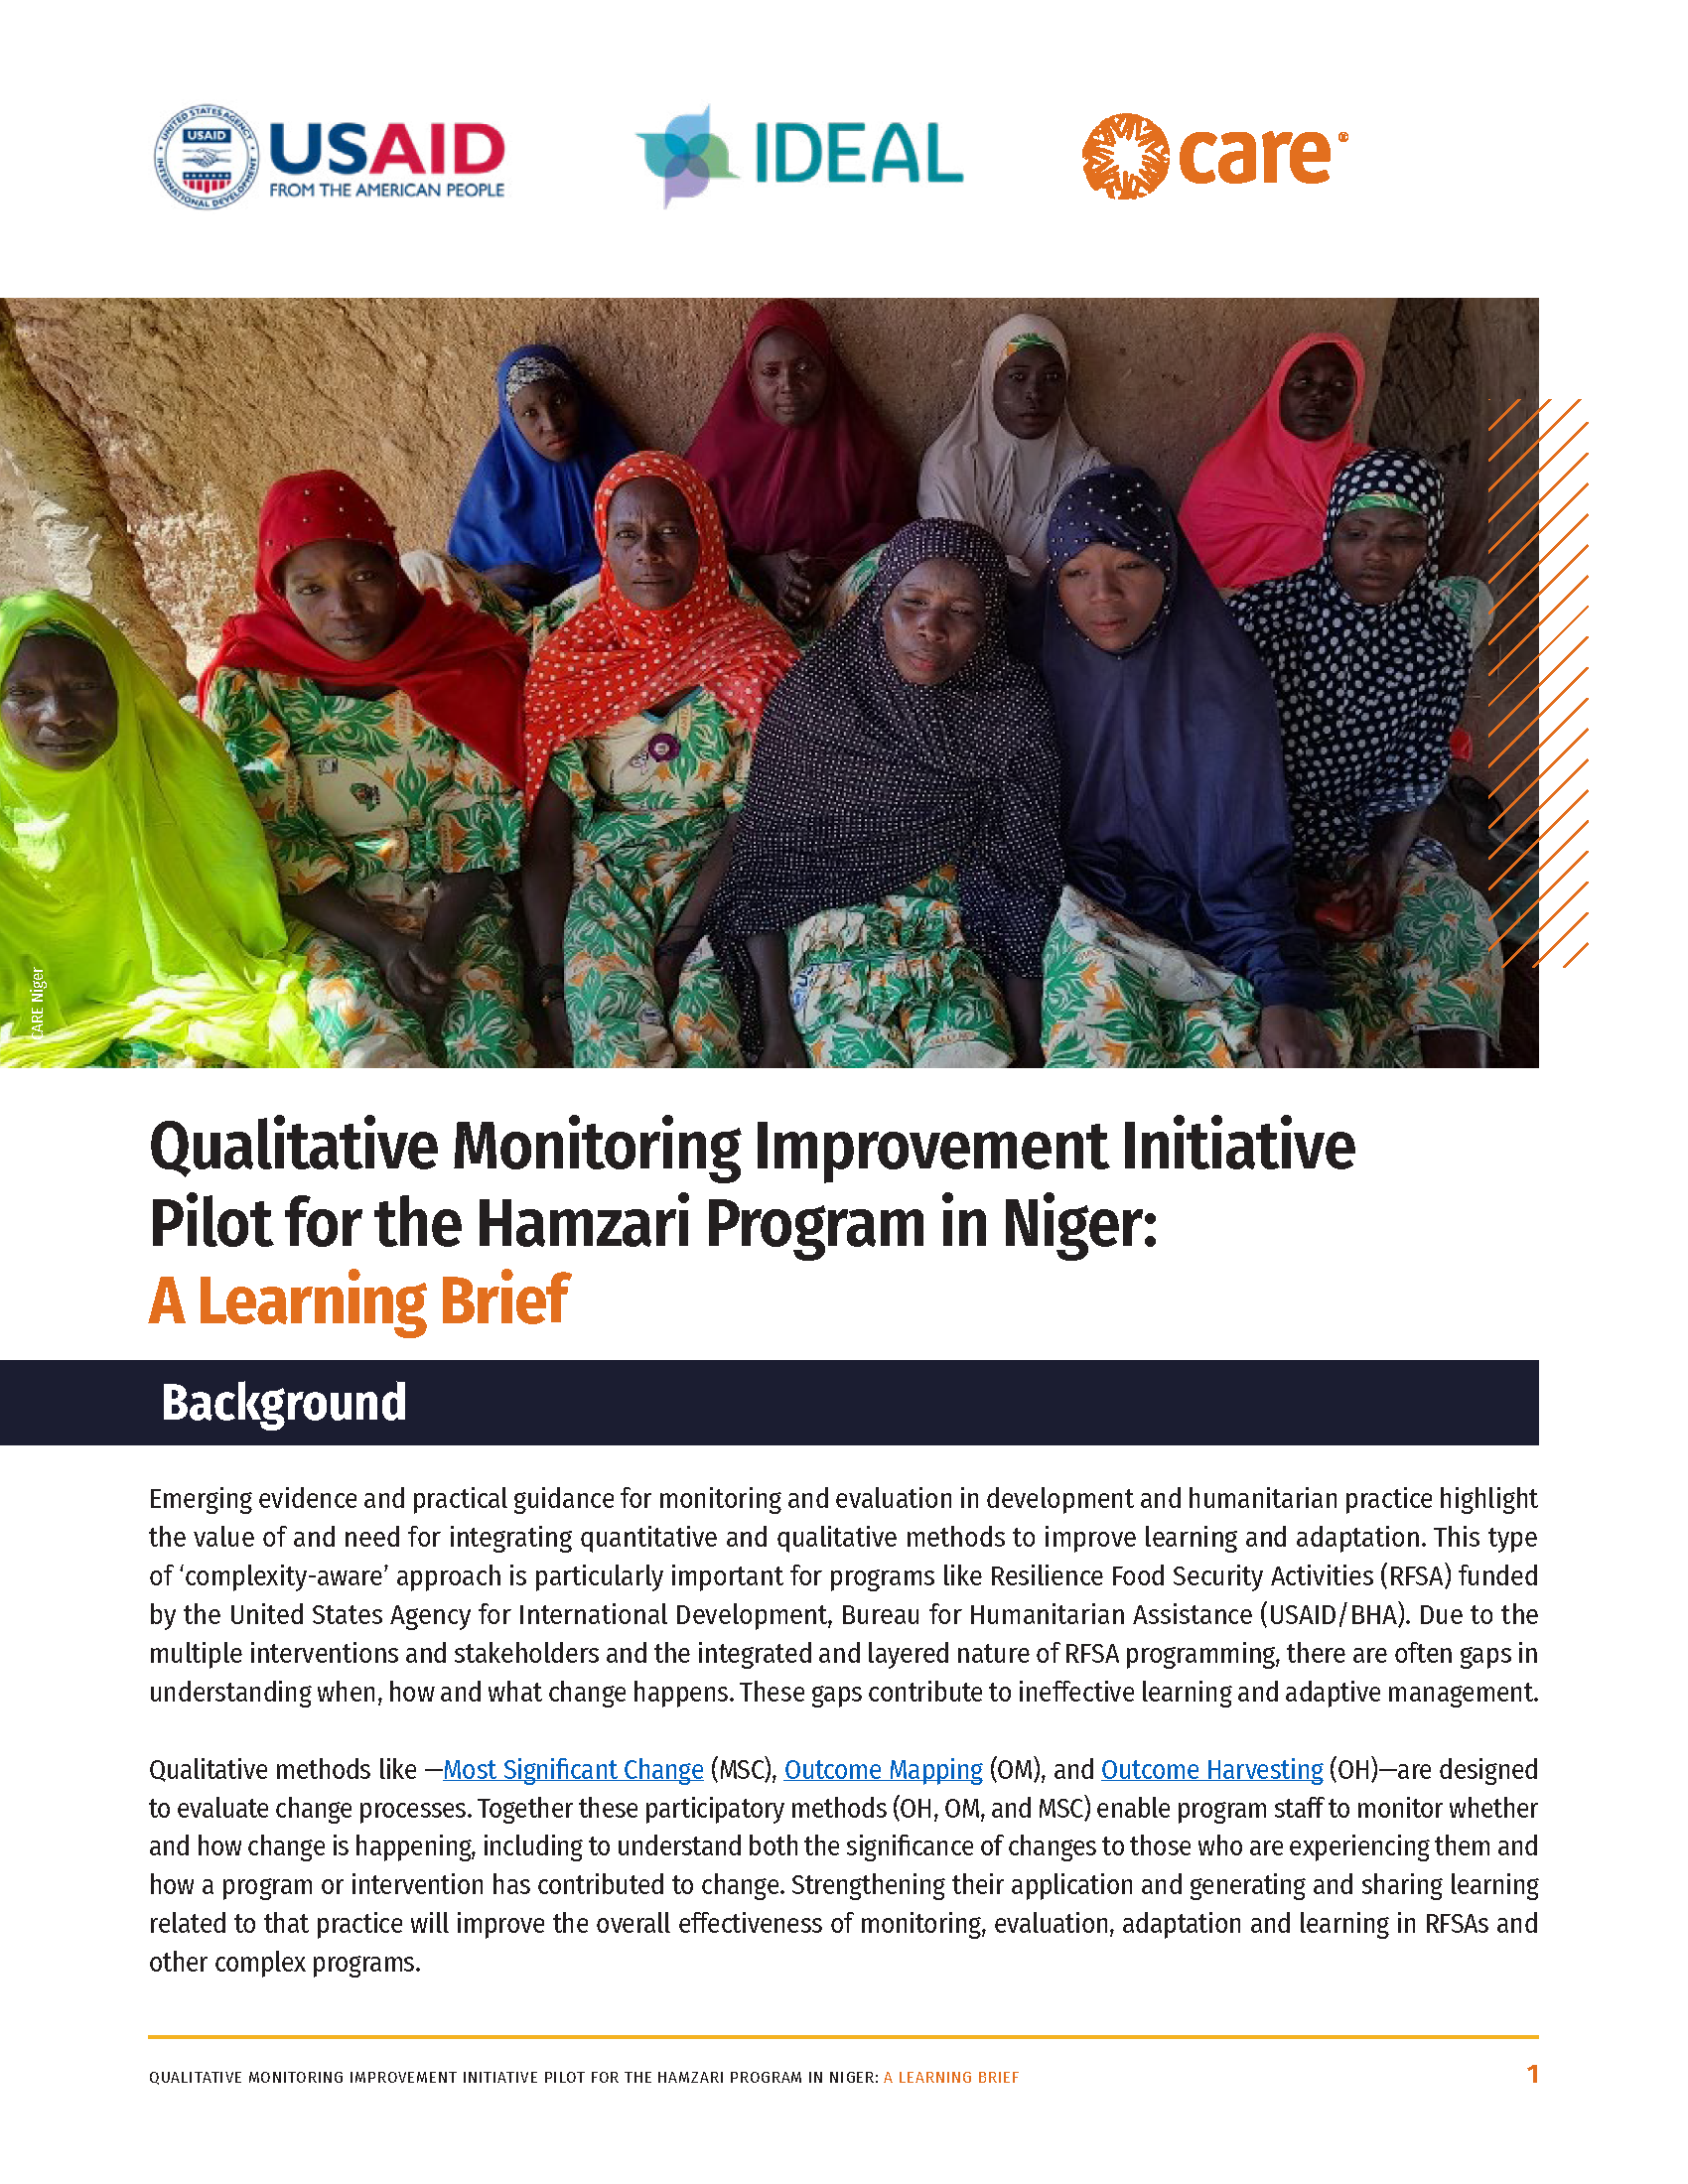 Page de couverture du projet pilote d'initiative d'amélioration du suivi qualitatif pour le programme Hamzari au Niger : une synthèse d'apprentissage